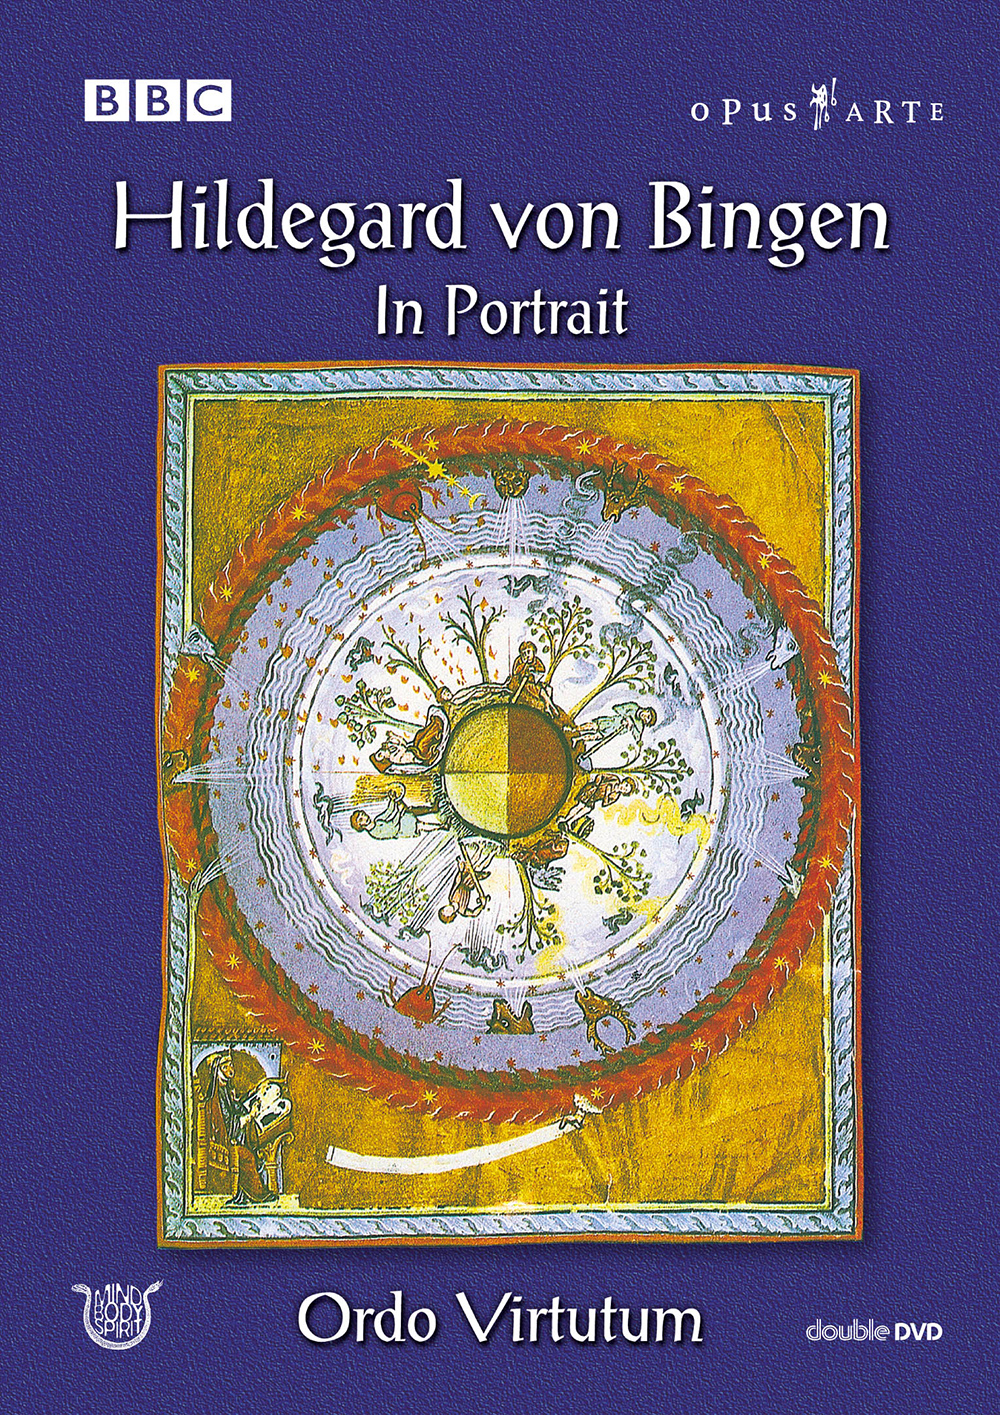 Hildegard von Bingen: Hildegard von Bingen in Portrait